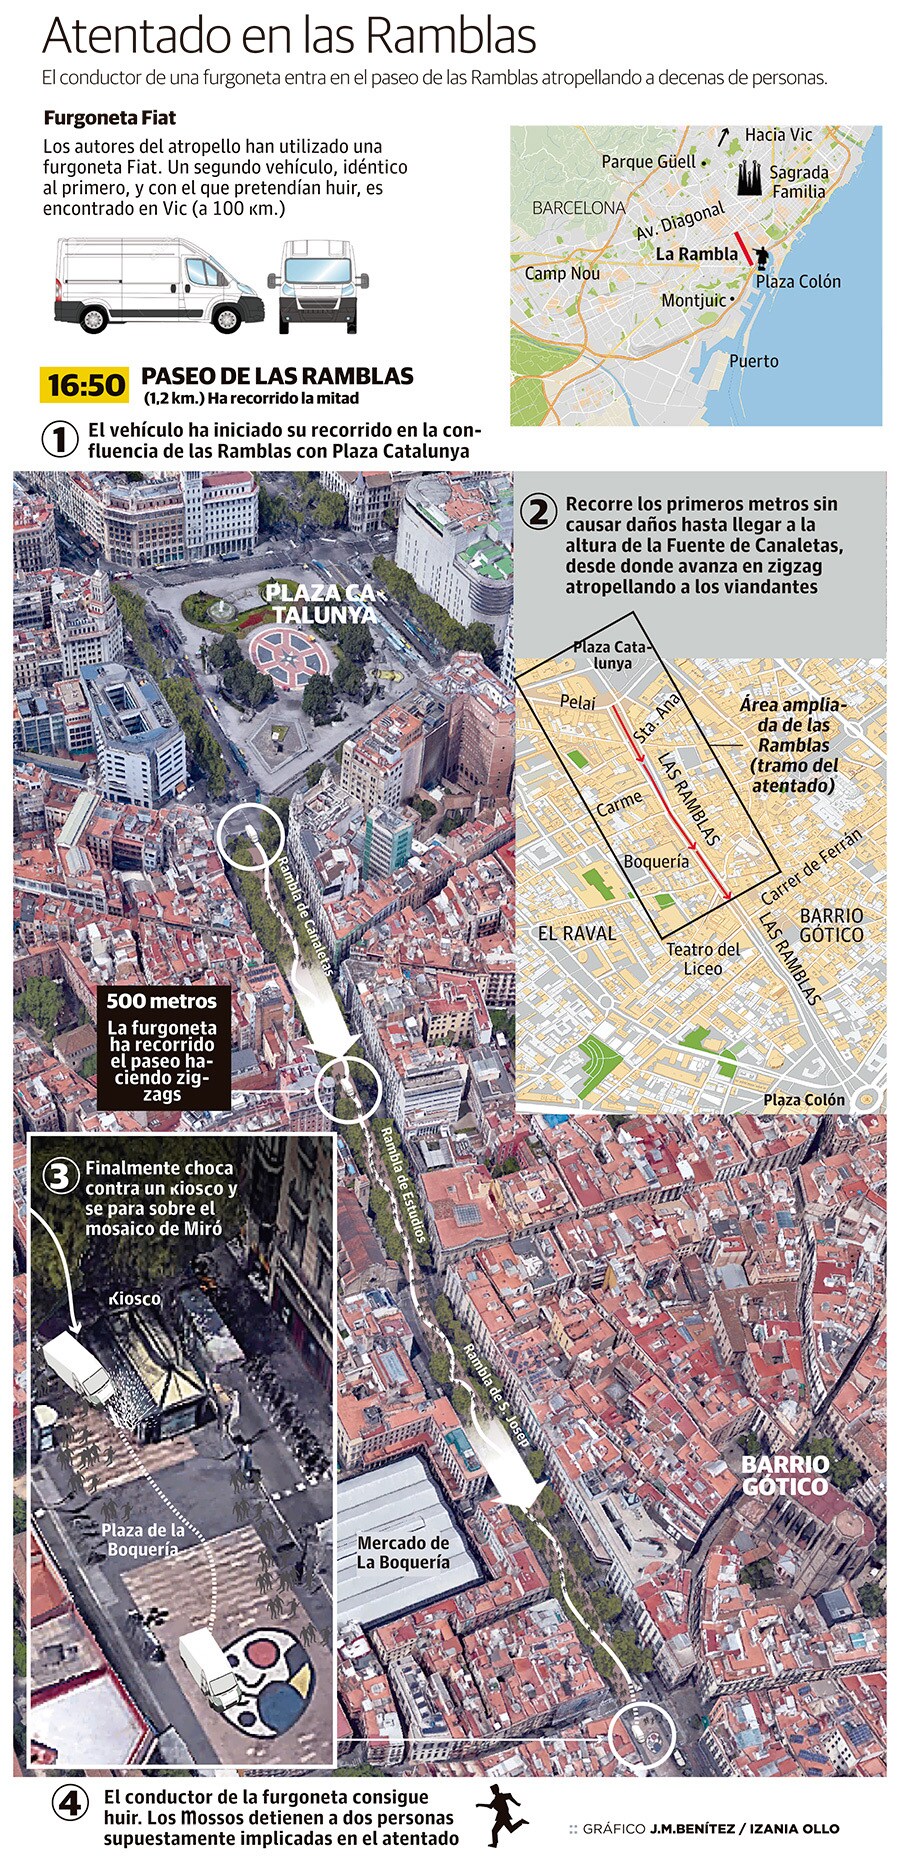 Así fue el atentado en Las Ramblas de Barcelona